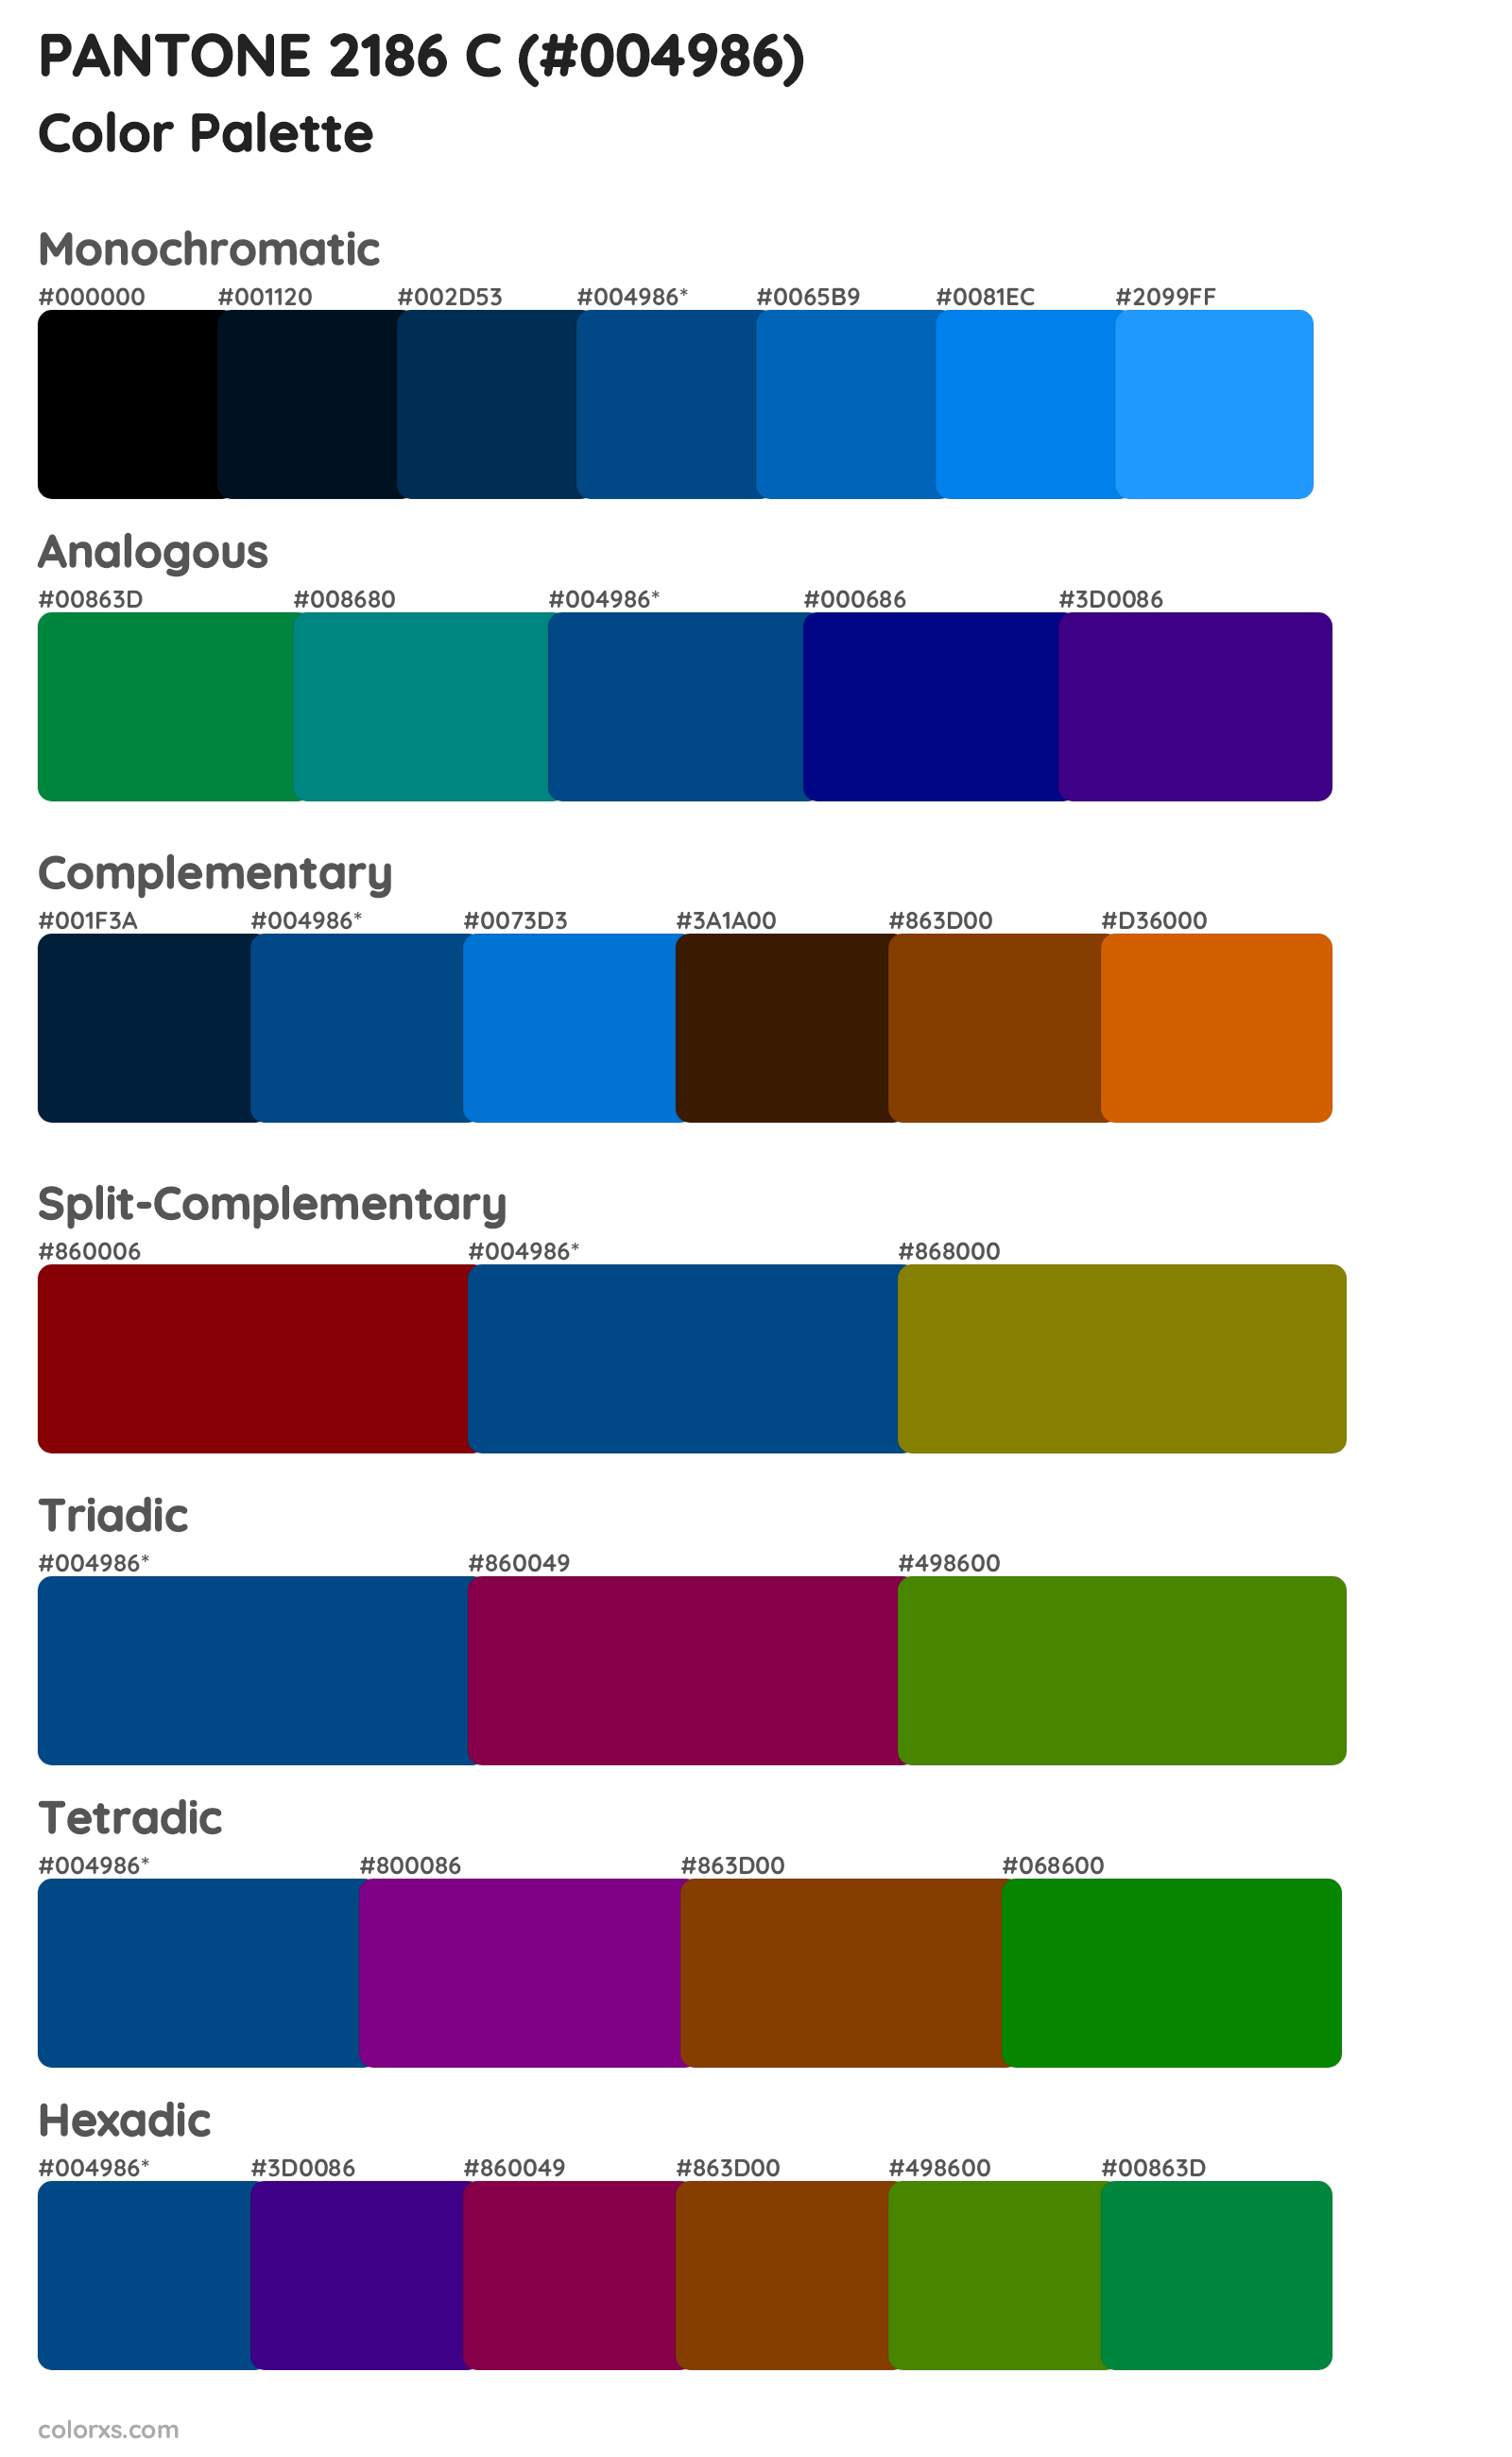 PANTONE 2186 C Color Scheme Palettes